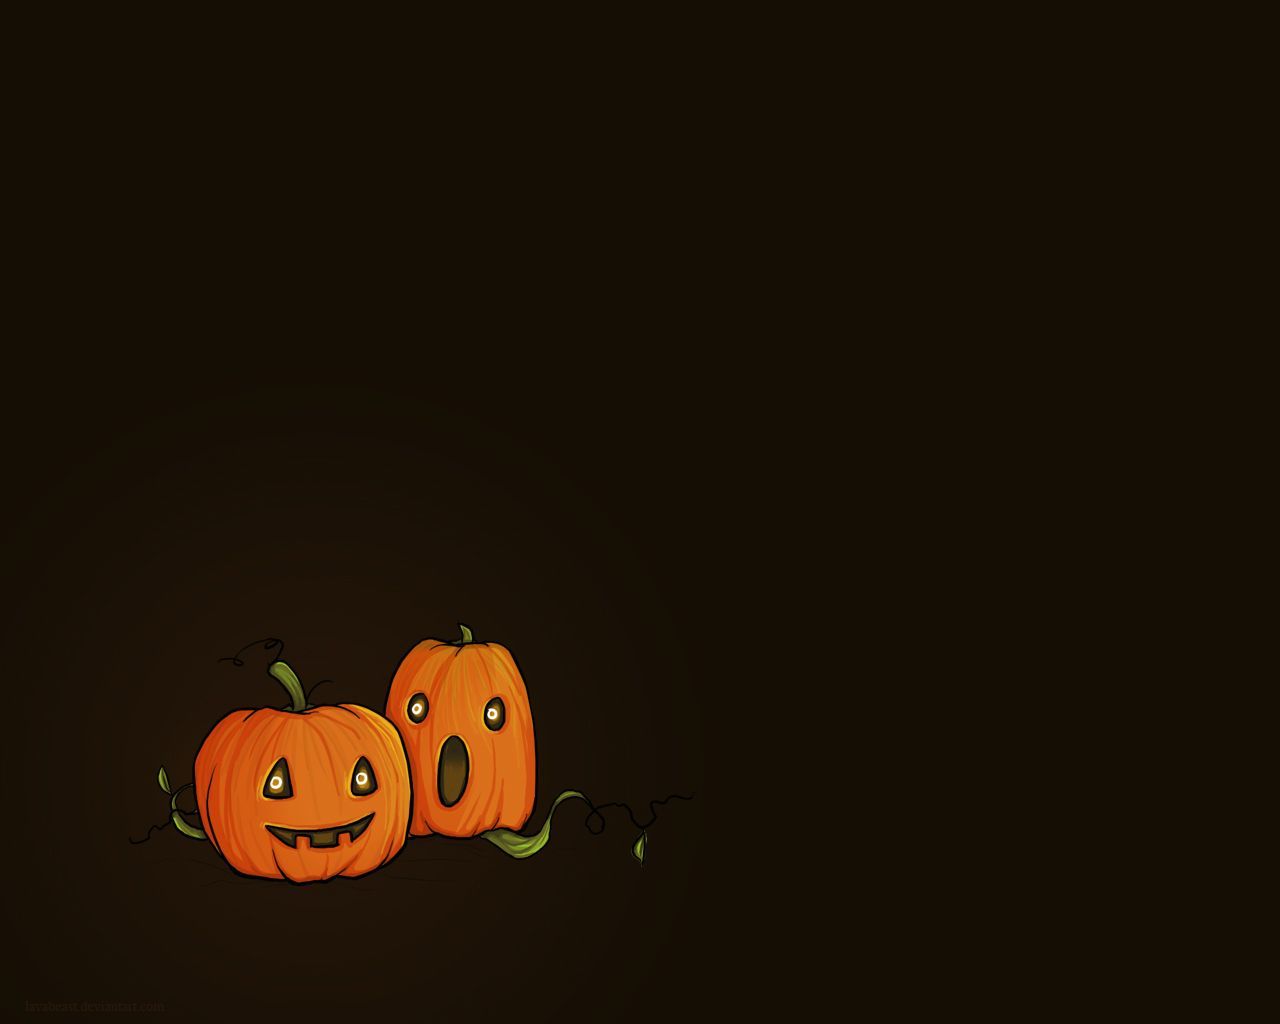 Cute Halloween Desktop Wallpaper. Pumpkin wallpaper, Halloween desktop wallpaper, Halloween wallpaper